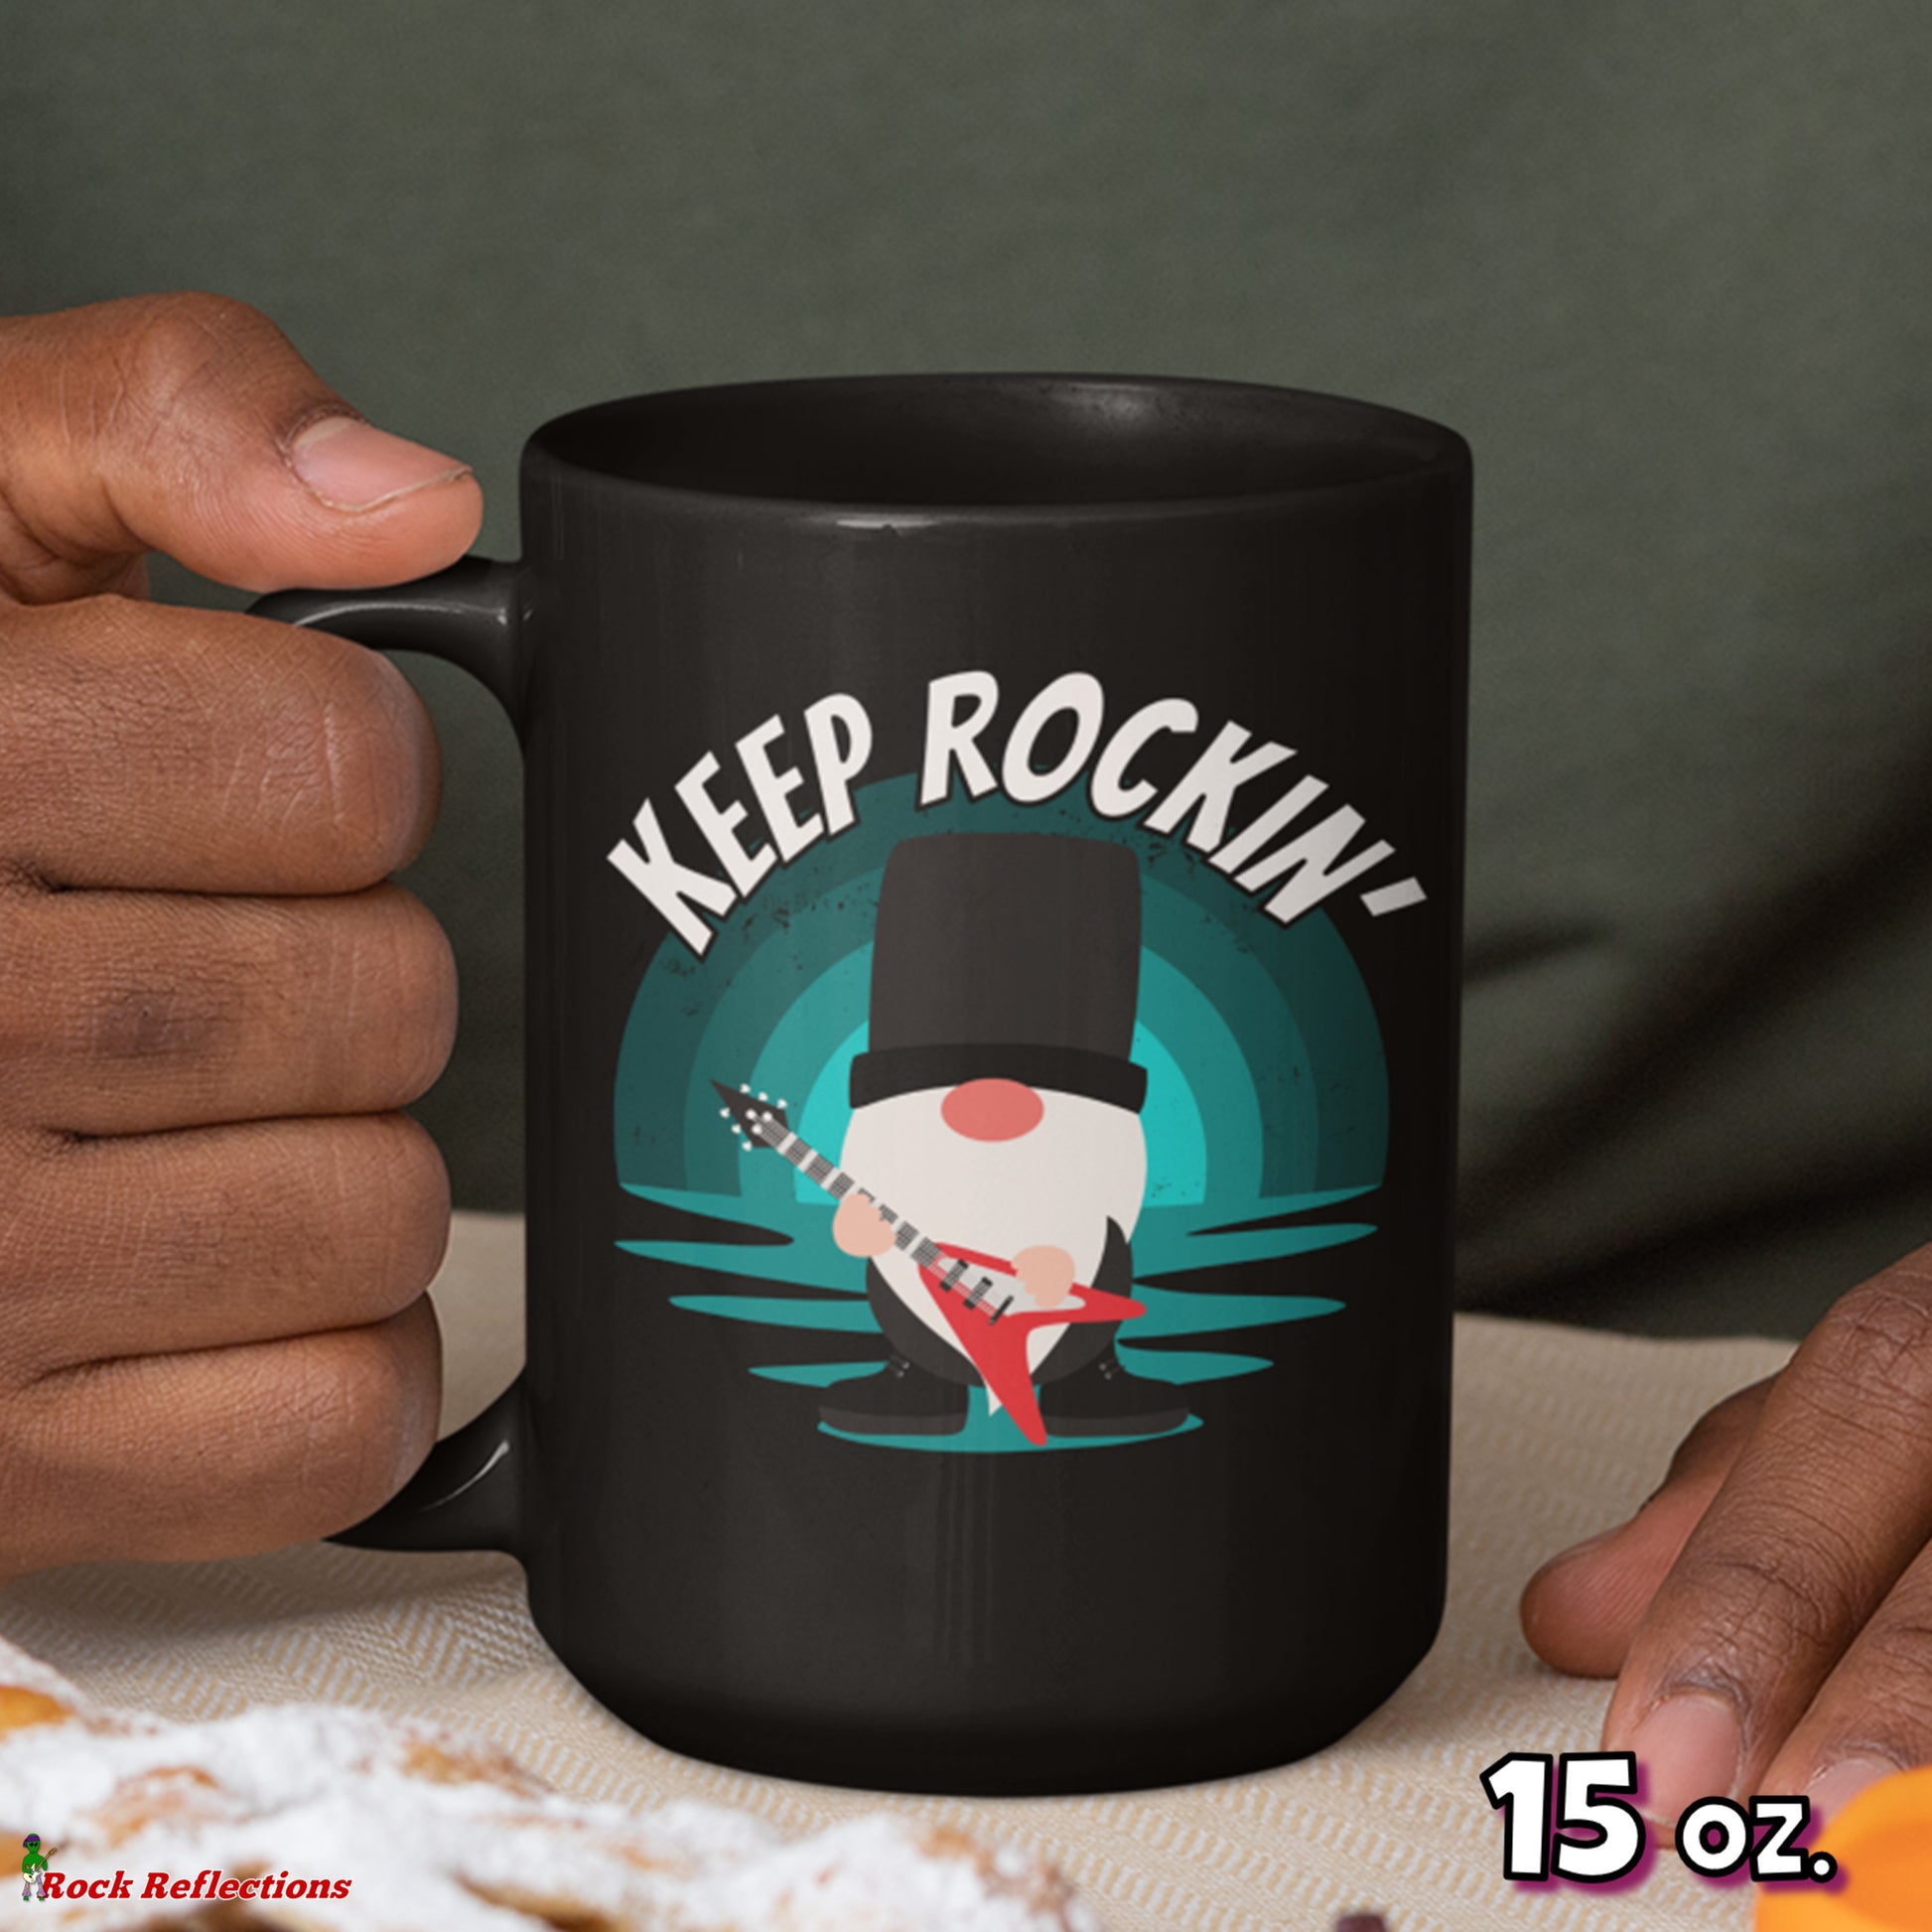 Keep Rockin' Gnome Black Mug CustomCat